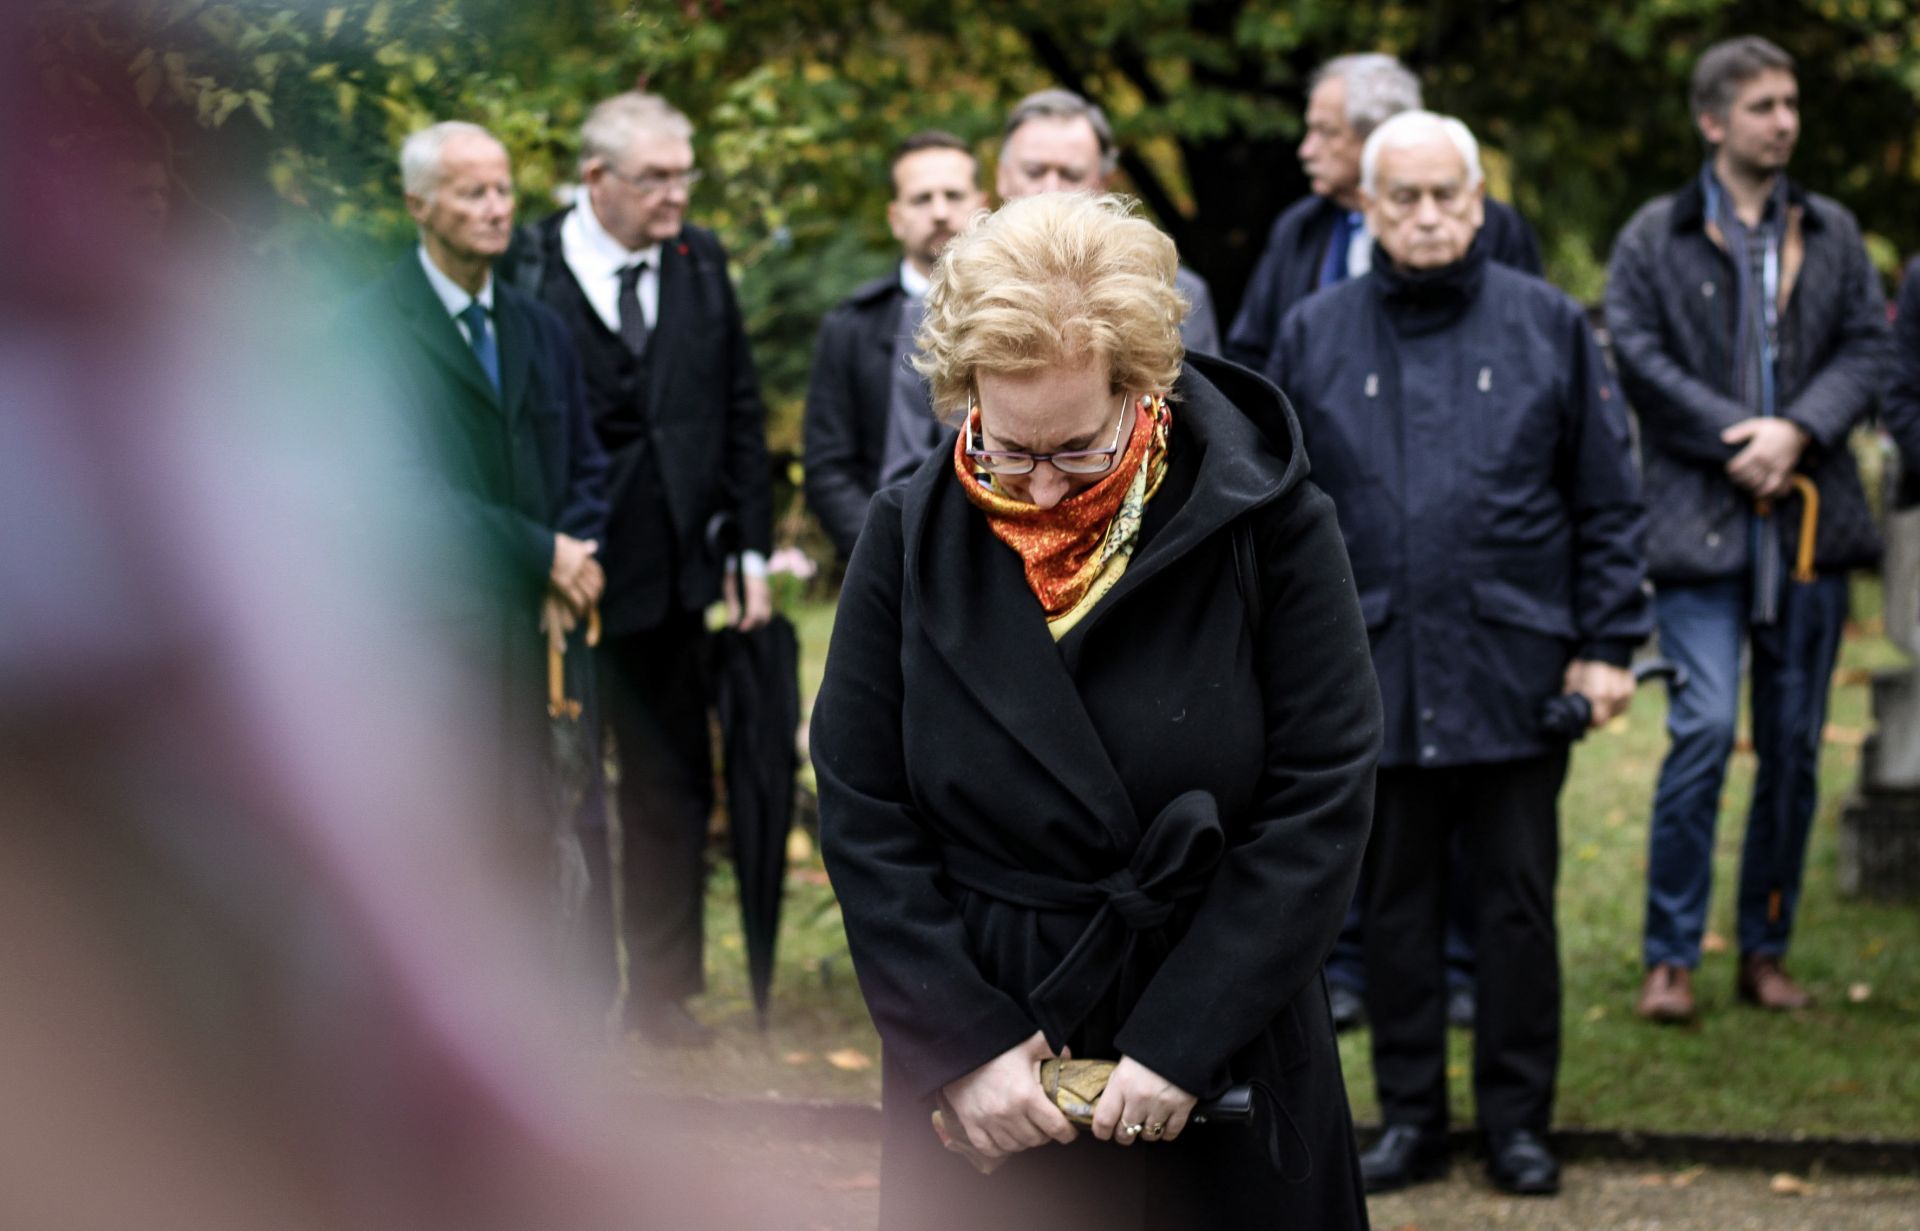 Csendes megemlékezést tartottak a Fiumei úti sírkertben az 1956-os forradalom és szabadságharc leverésének emlékére